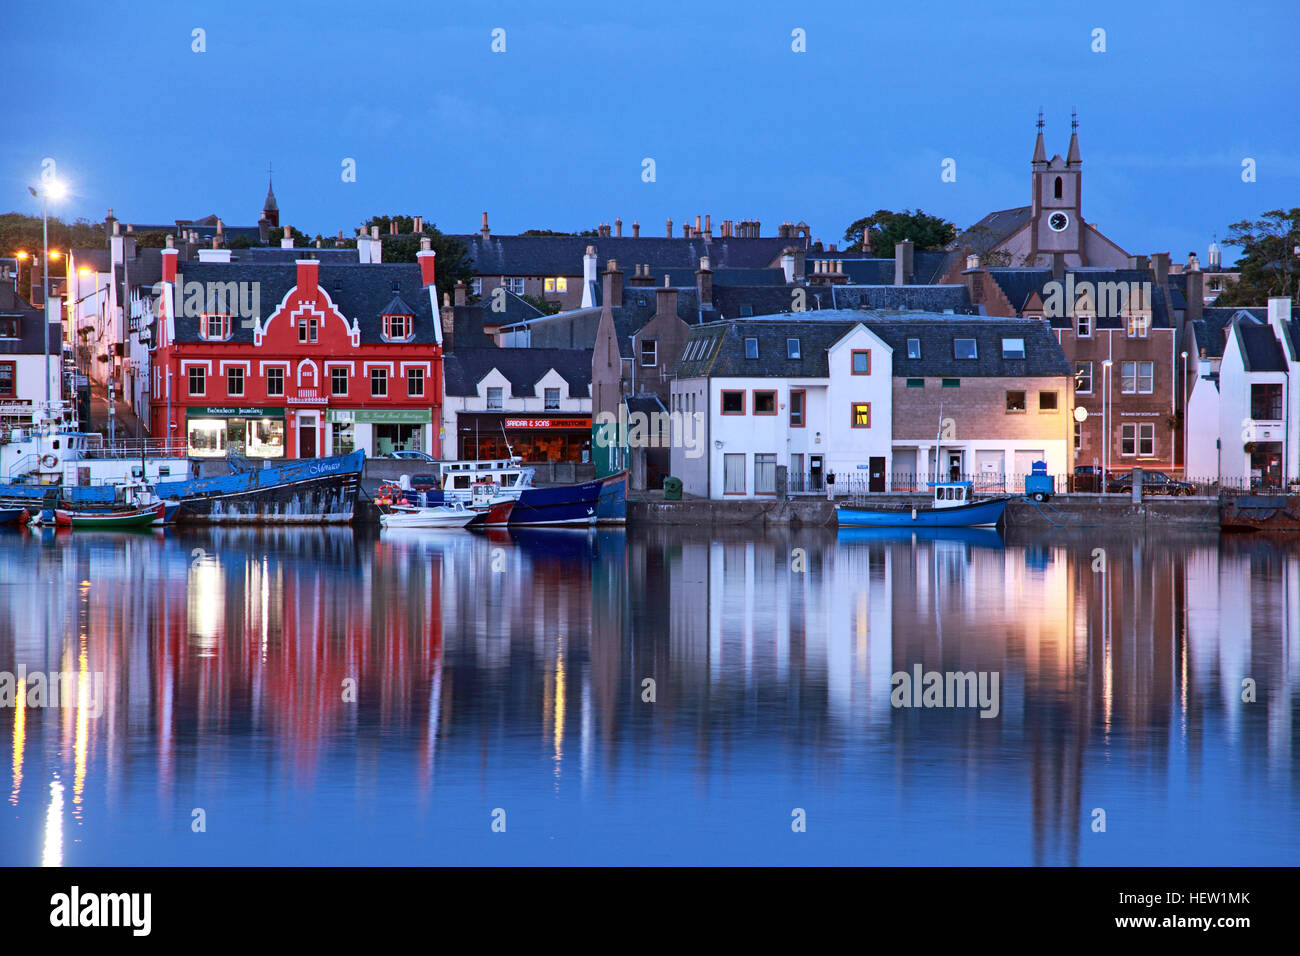 Stornoway, capitale de l'île de Lewis, port historique, avec bateaux, bateaux de pêche et chalets, au crépuscule Banque D'Images